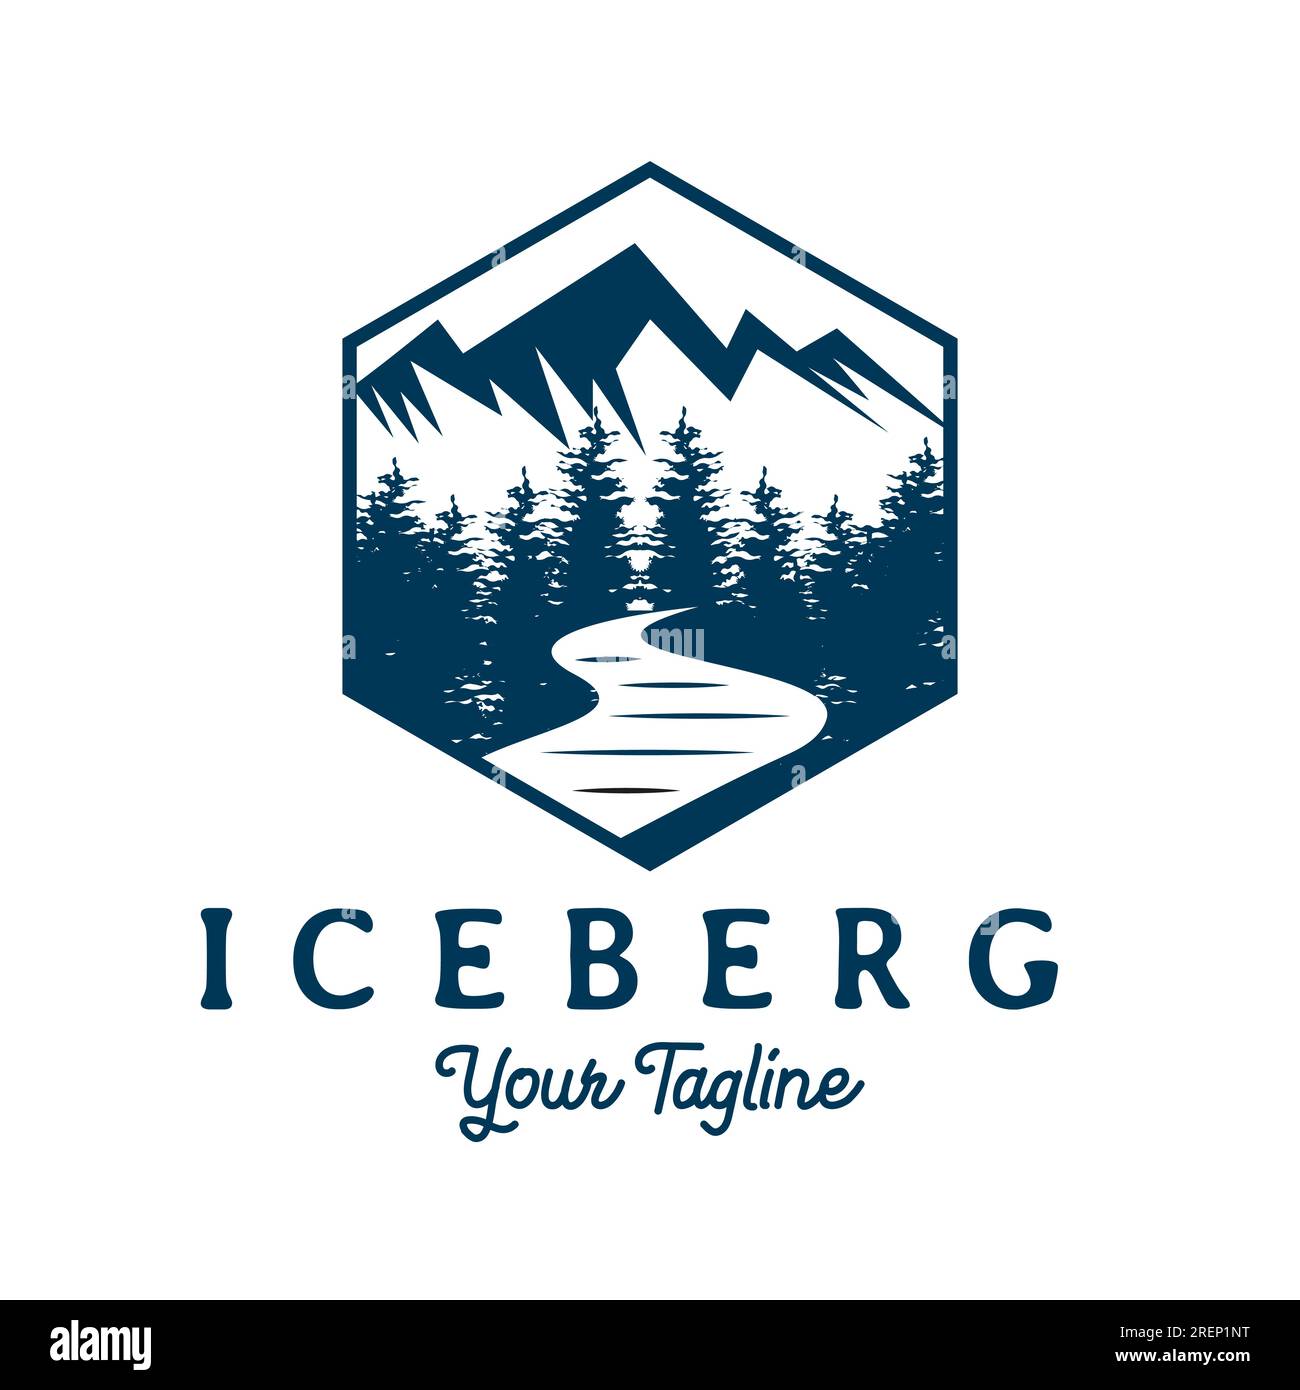 ICE Snow Mountain Hill Creek River et Pine Trees style rétro vintage pour Adventure badge logo Design Vector Illustration de Vecteur